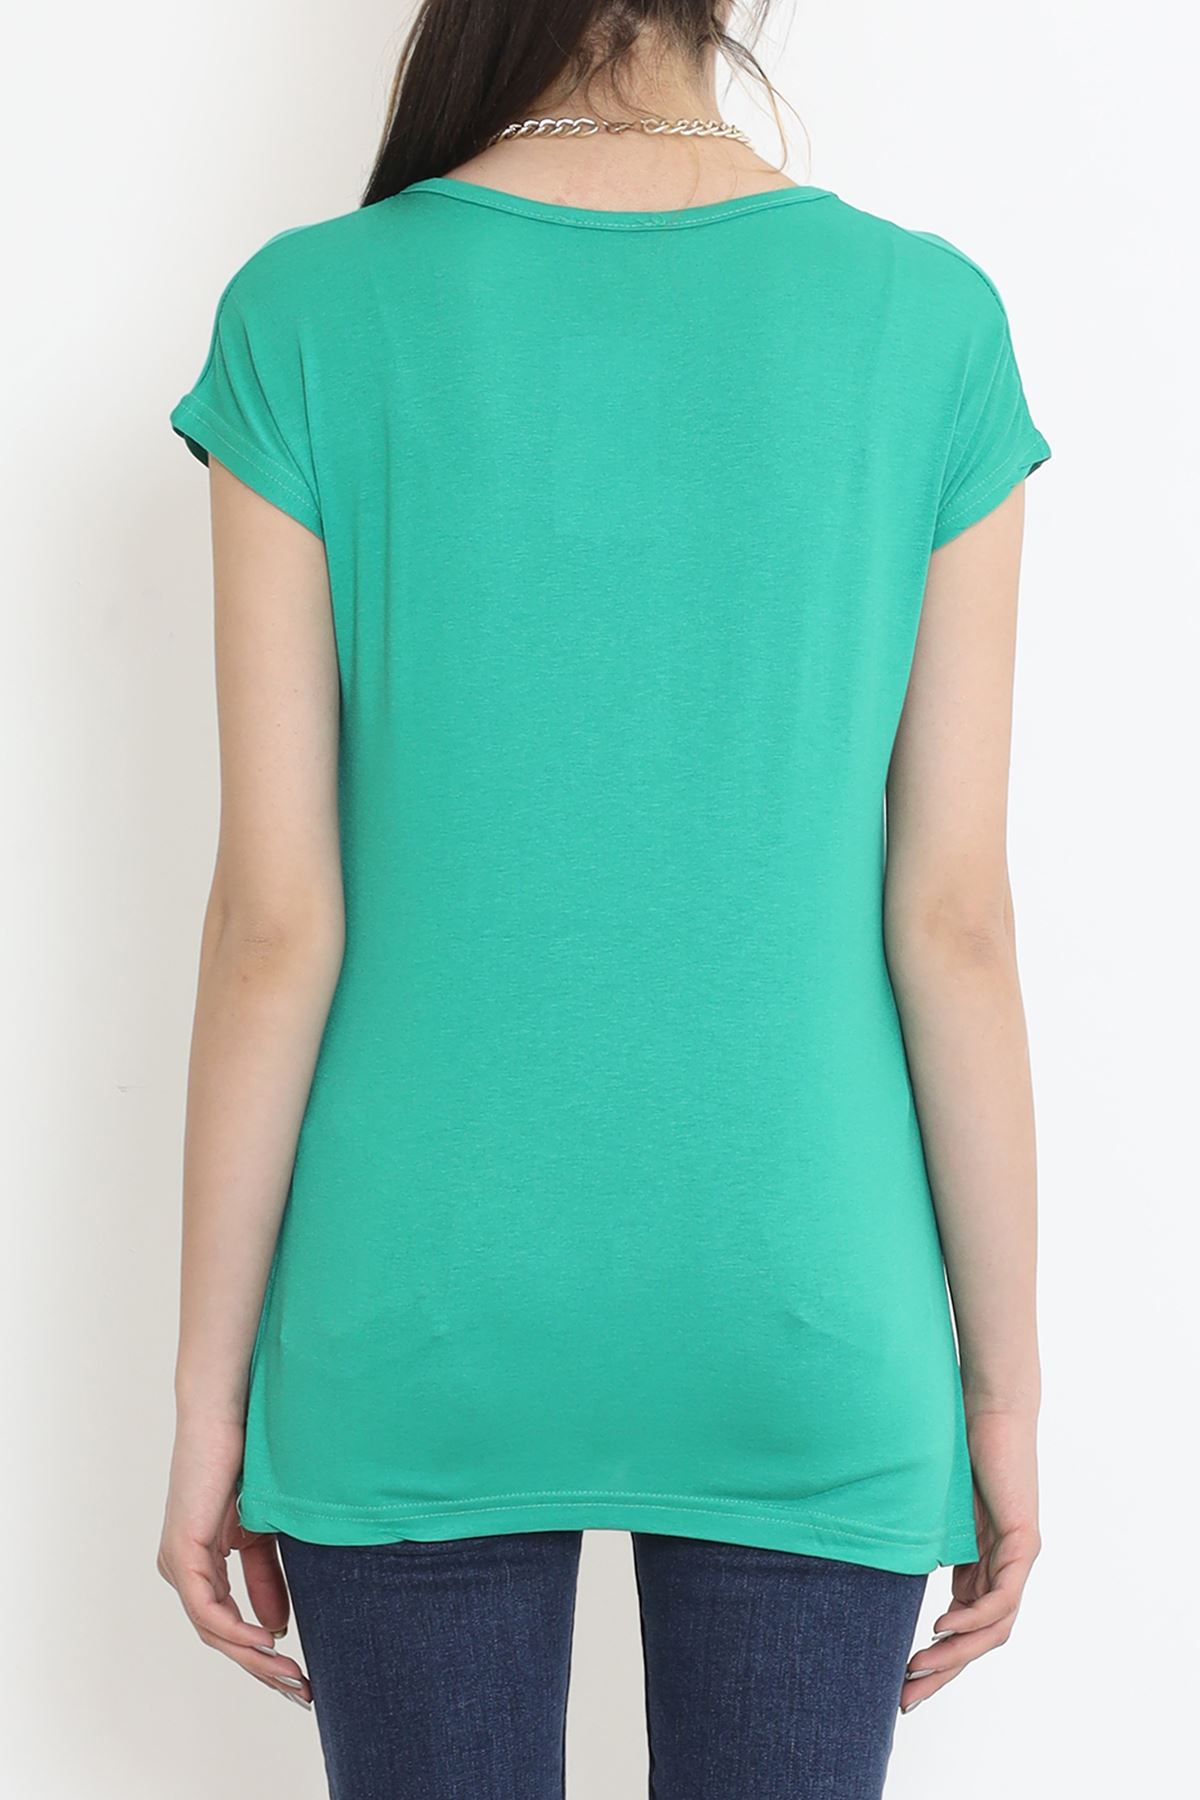 İşlemeli Bluz Yeşil - 17132.599.